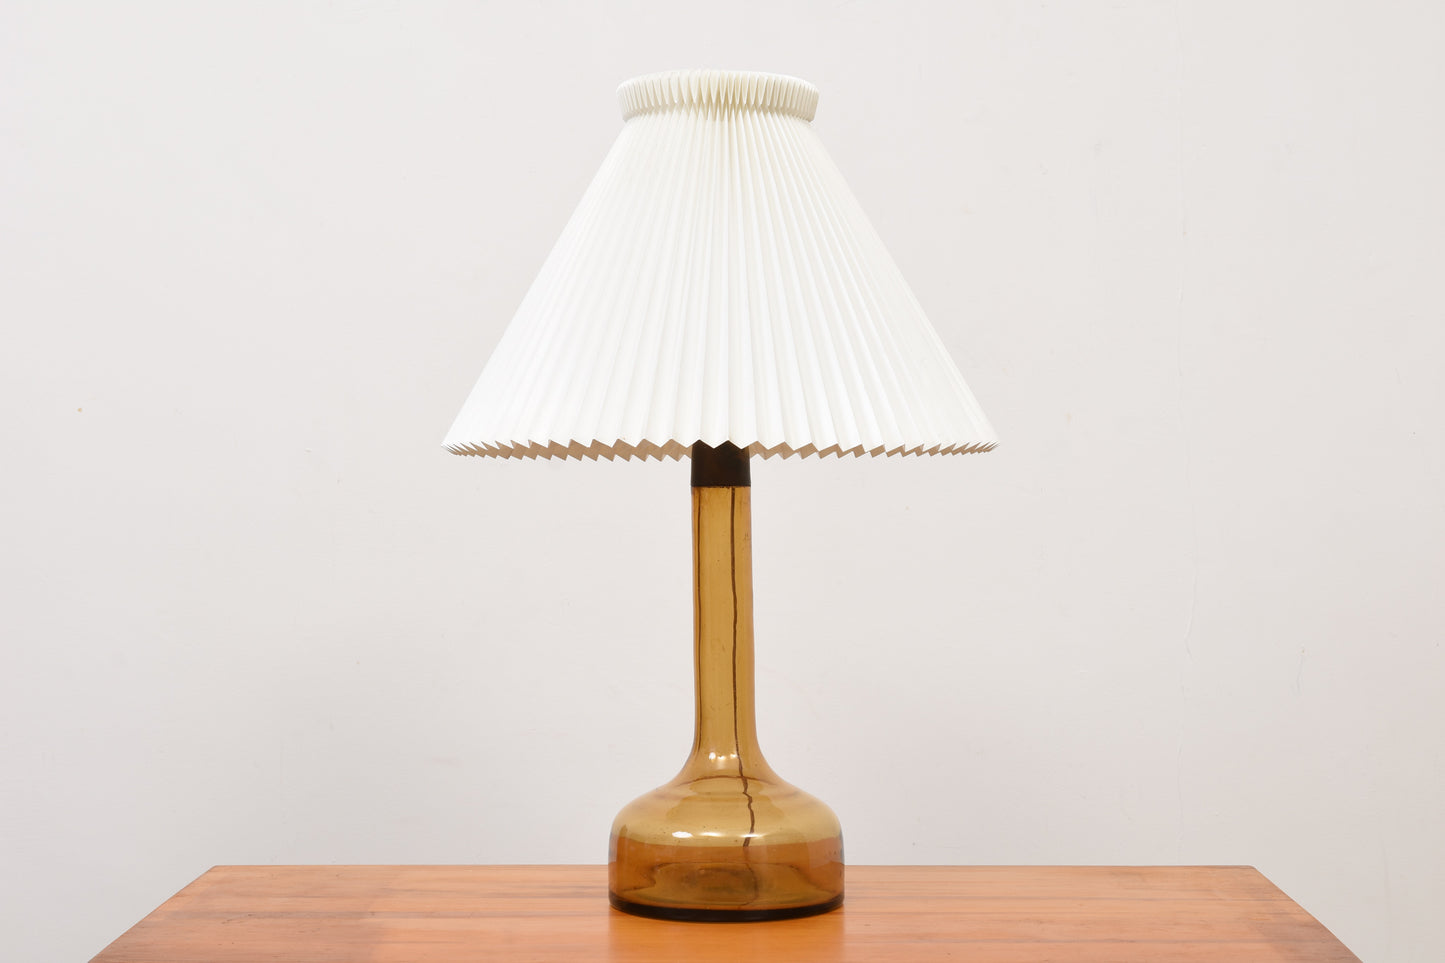 Model 343 table lamp by Le Klint